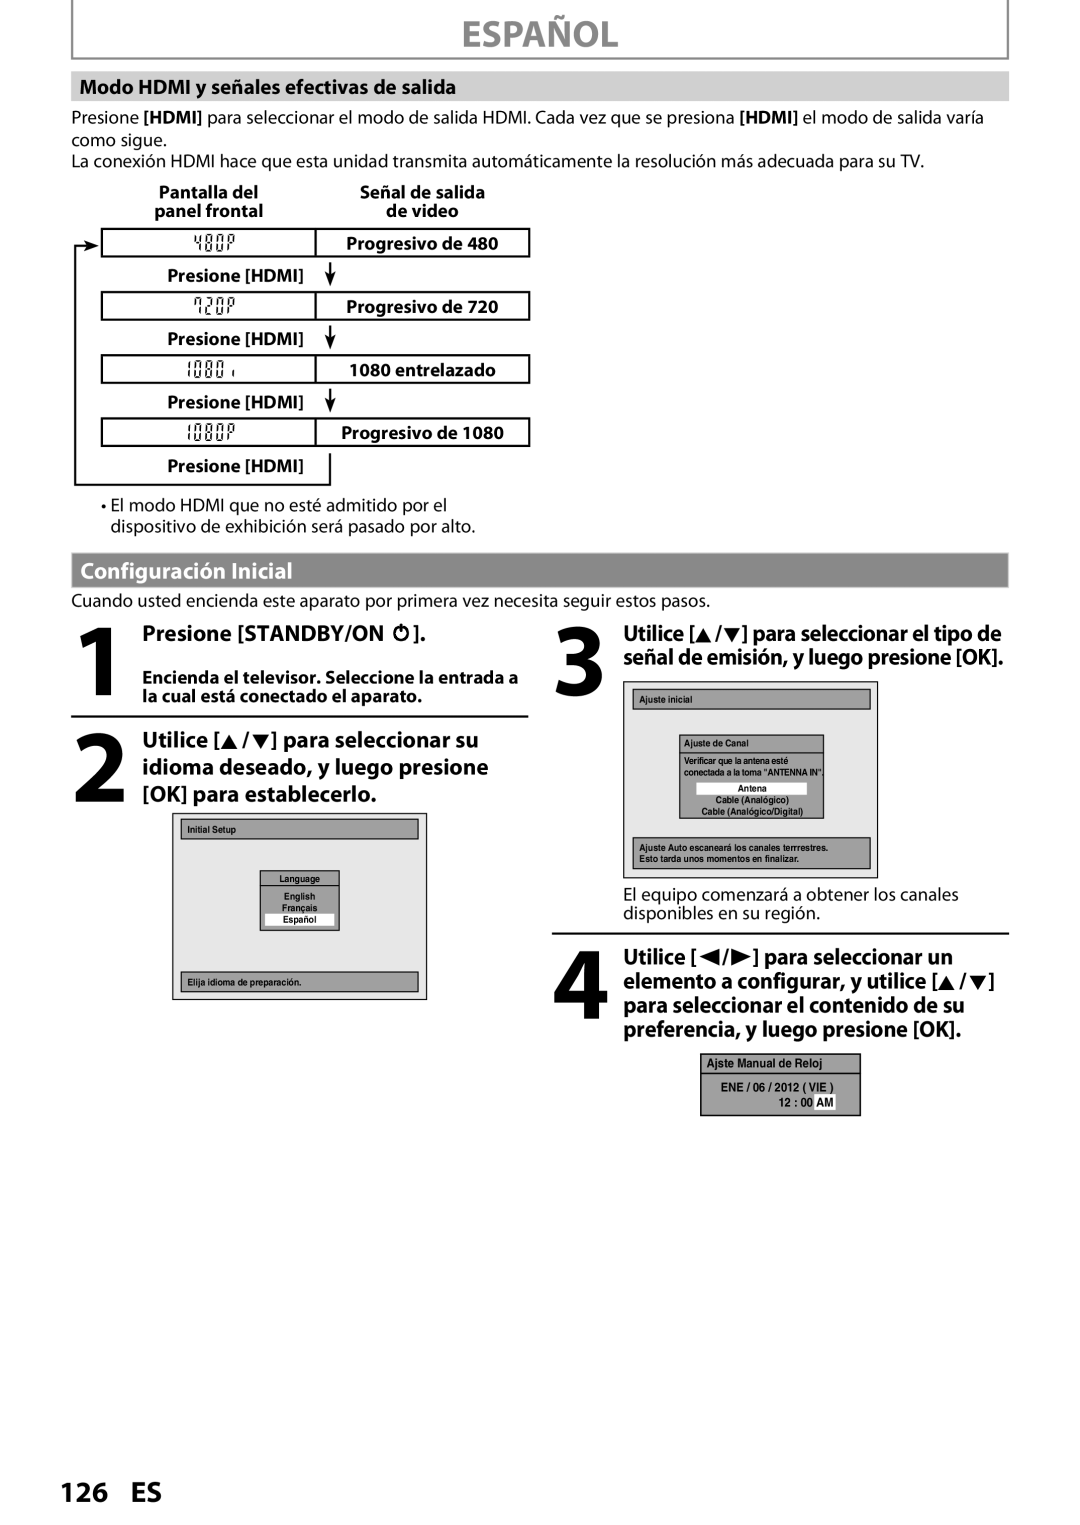 Magnavox MDR533H Español, 126 ES, Configuración Inicial, Presione STANDBY/ON y, Modo HDMI y señales efectivas de salida 